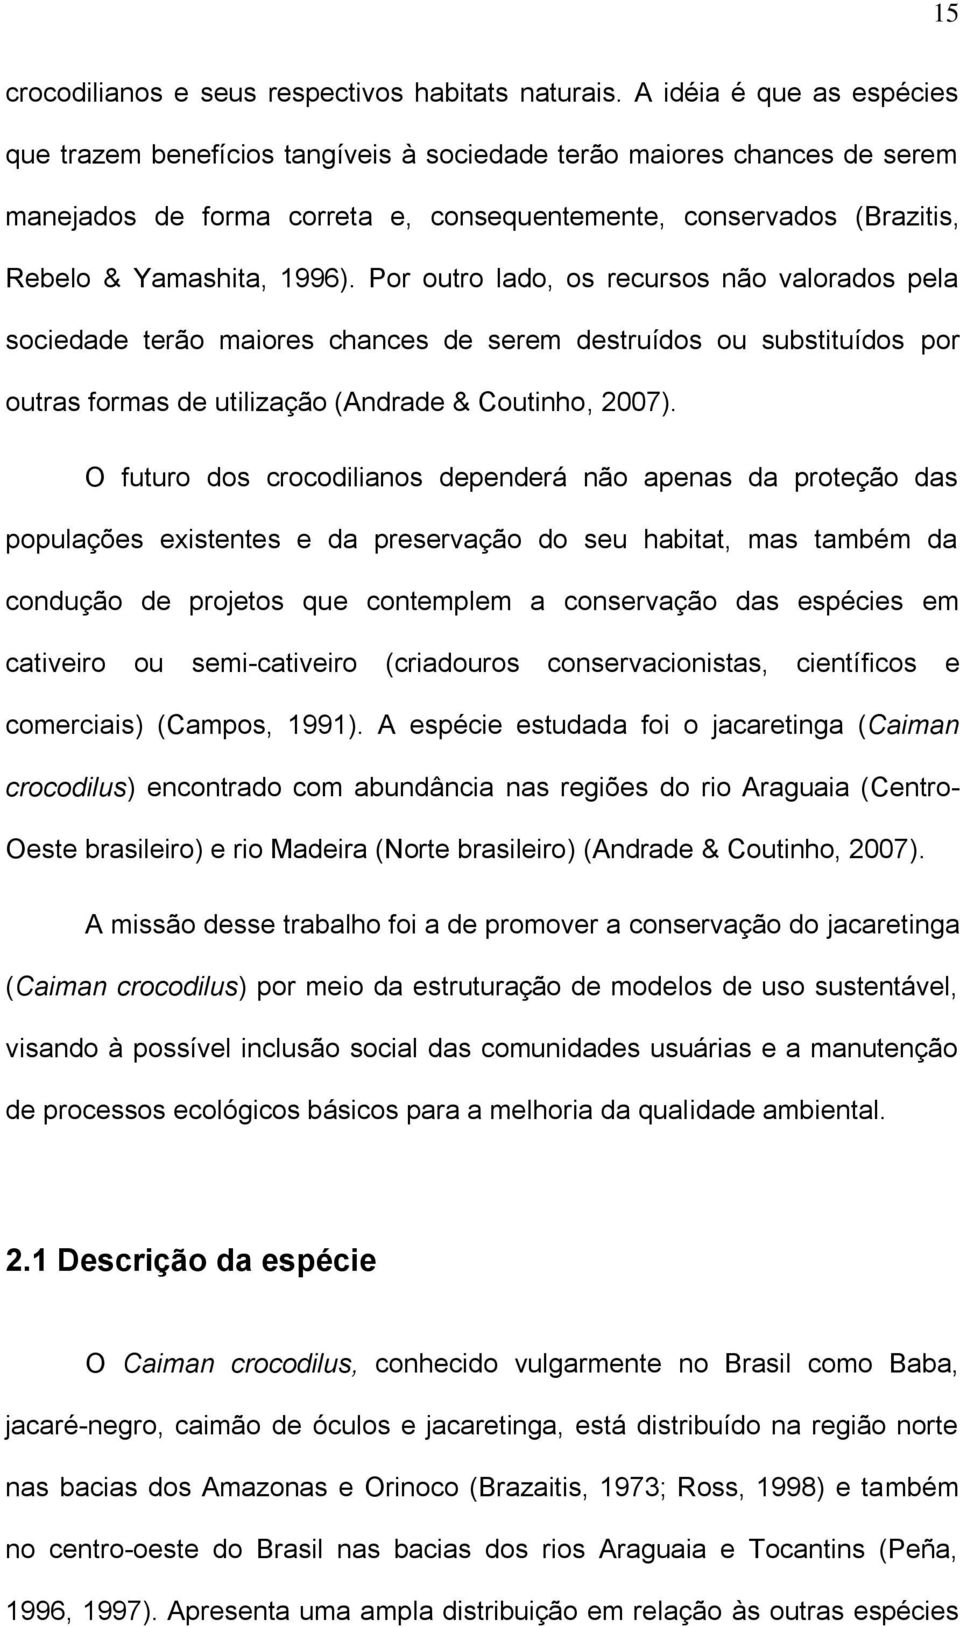 Por outro lado, os recursos não valorados pela sociedade terão maiores chances de serem destruídos ou substituídos por outras formas de utilização (Andrade & Coutinho, 2007).